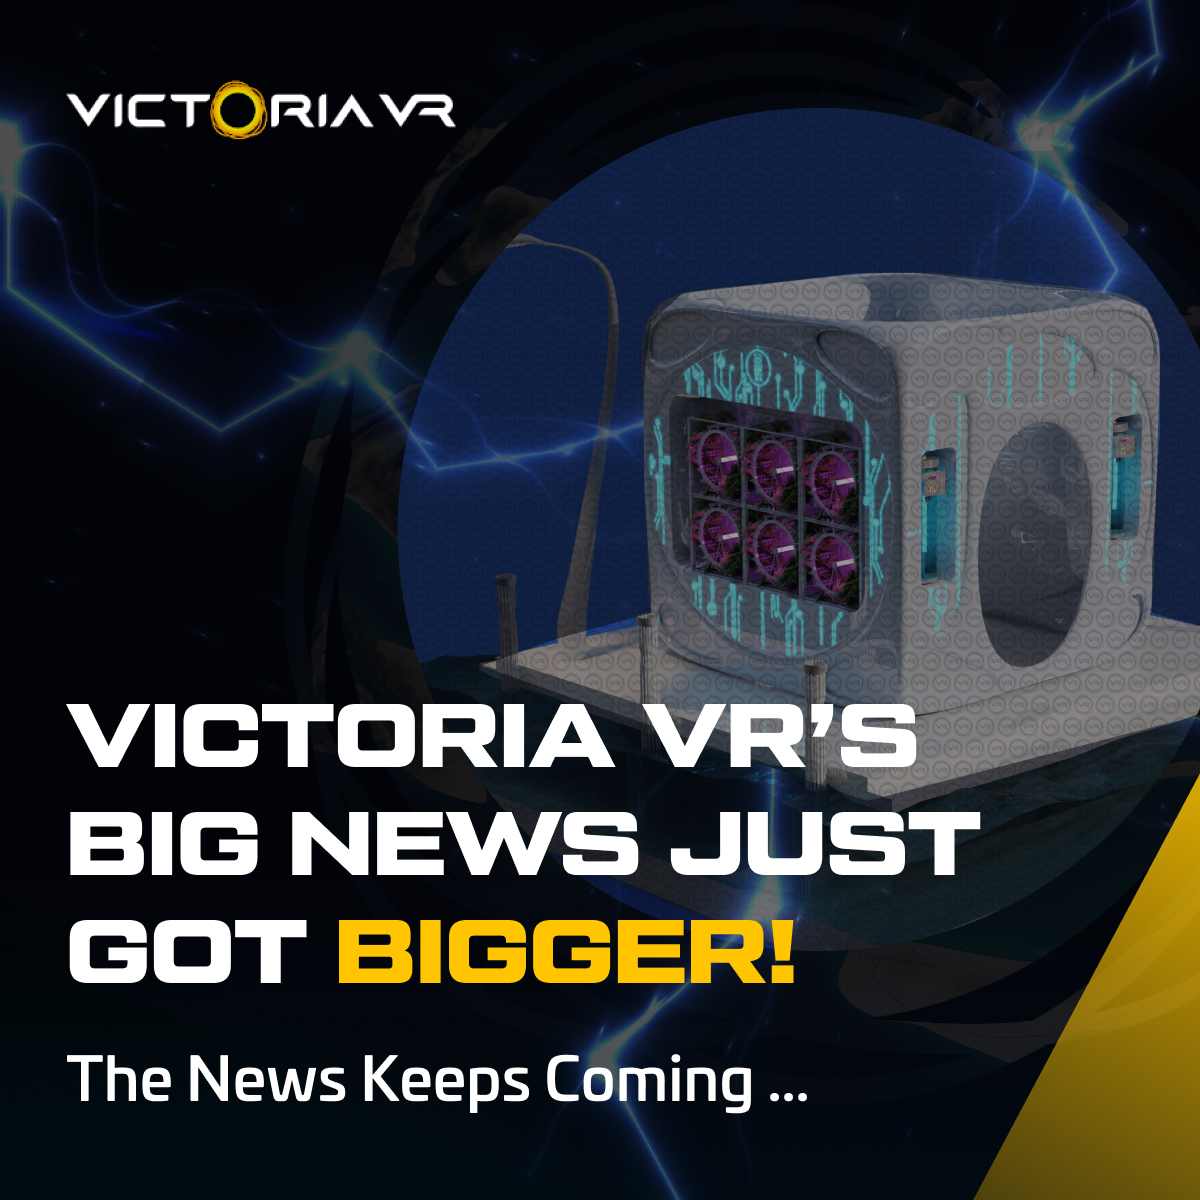 Victoria VR’s big news gets even bigger